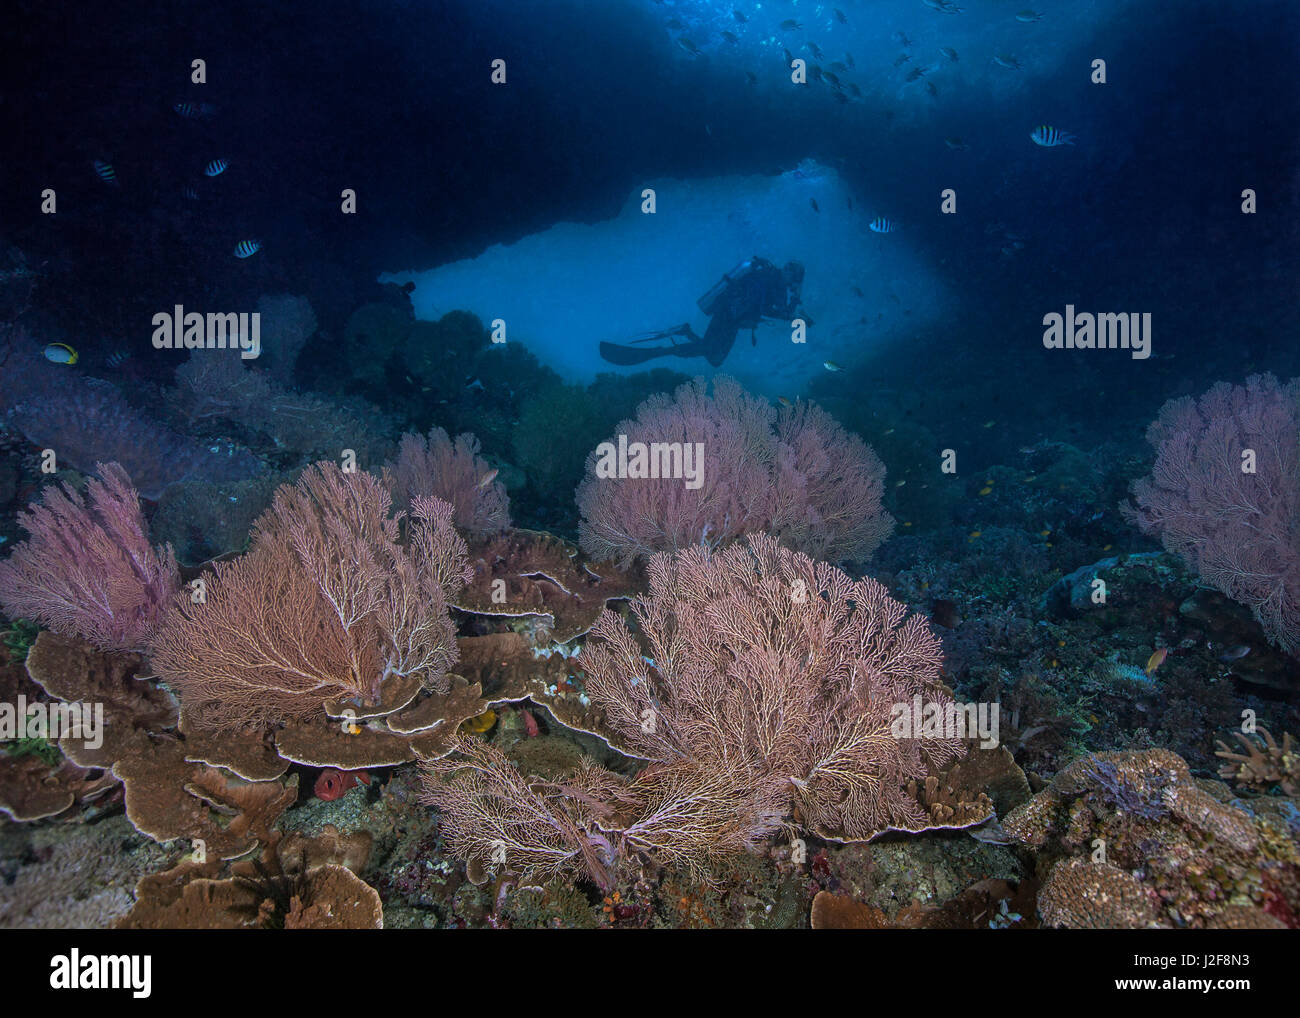 Colori del mare le ventole del telaio in primo piano la silhouette di un subacqueo nella finestra di un muro sottomarino. Raja Ampat, Indonesia. Foto Stock